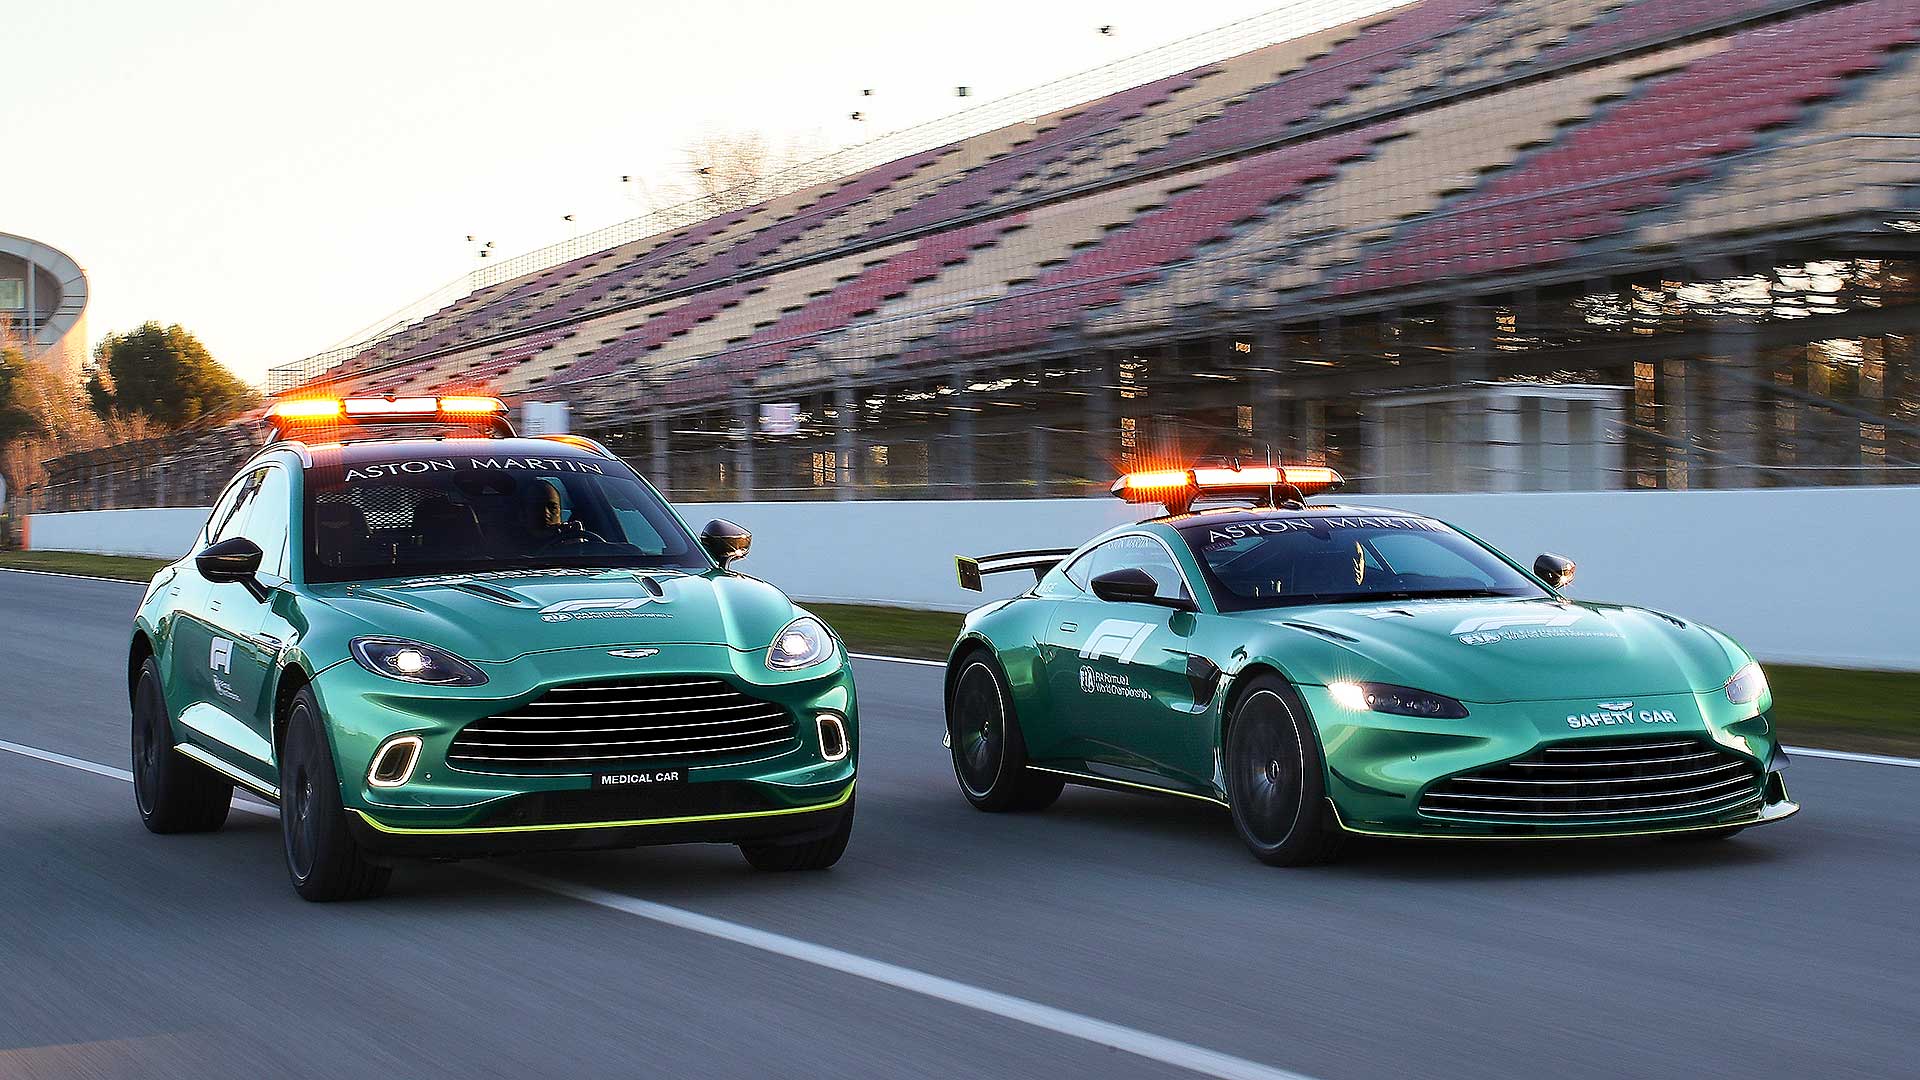 Aston Martin shares safety car duties